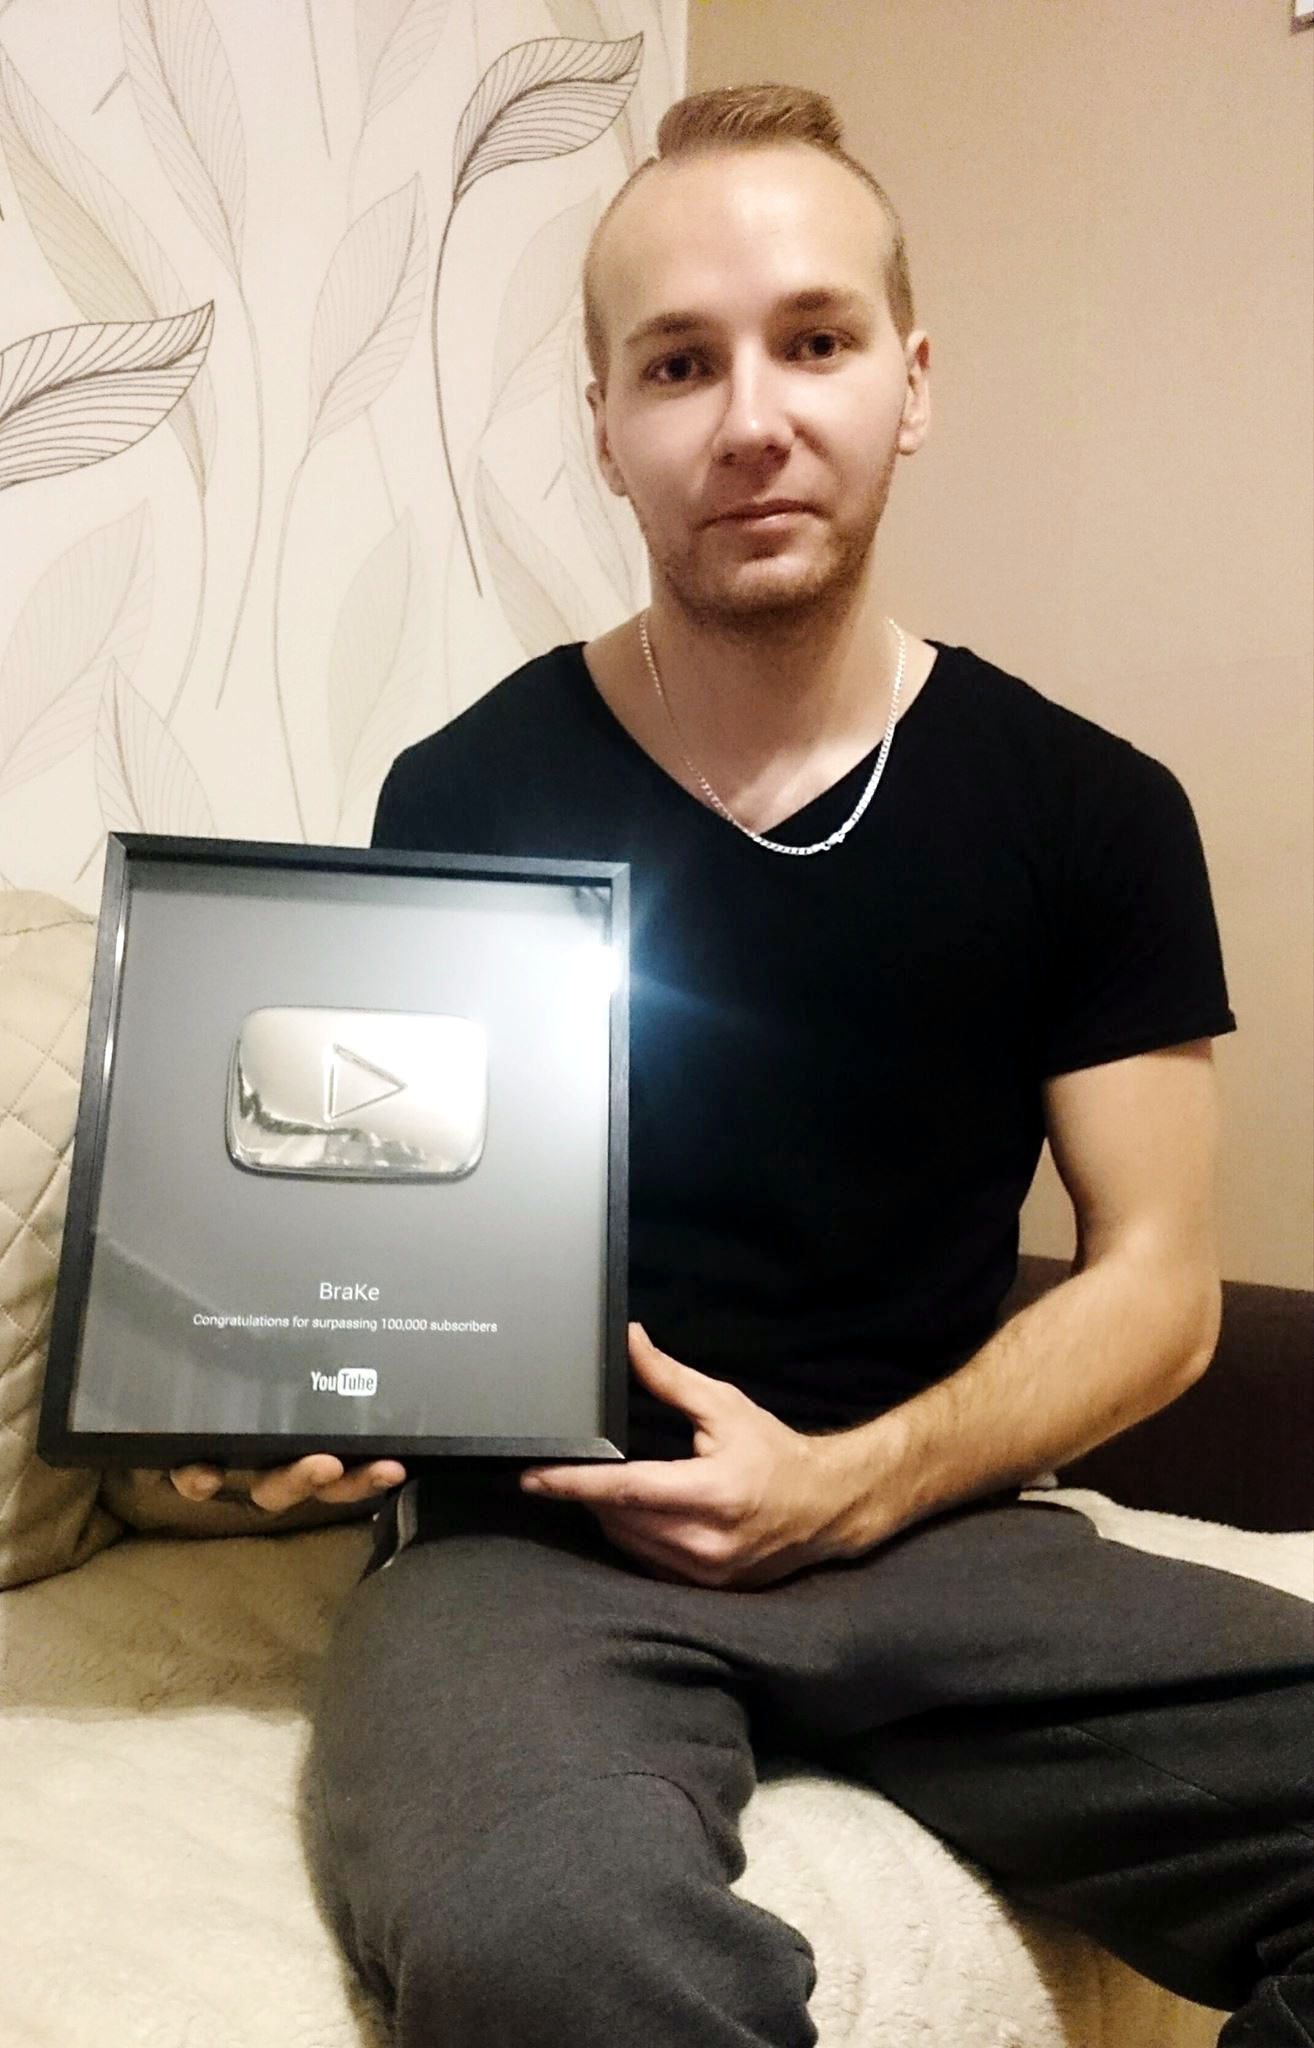 Marek Fąferek z nagrodą od serwisu YouTube - Srebrnym Przyciskiem Play za zgromadzenie 100 000 wizdów na swoim kanale